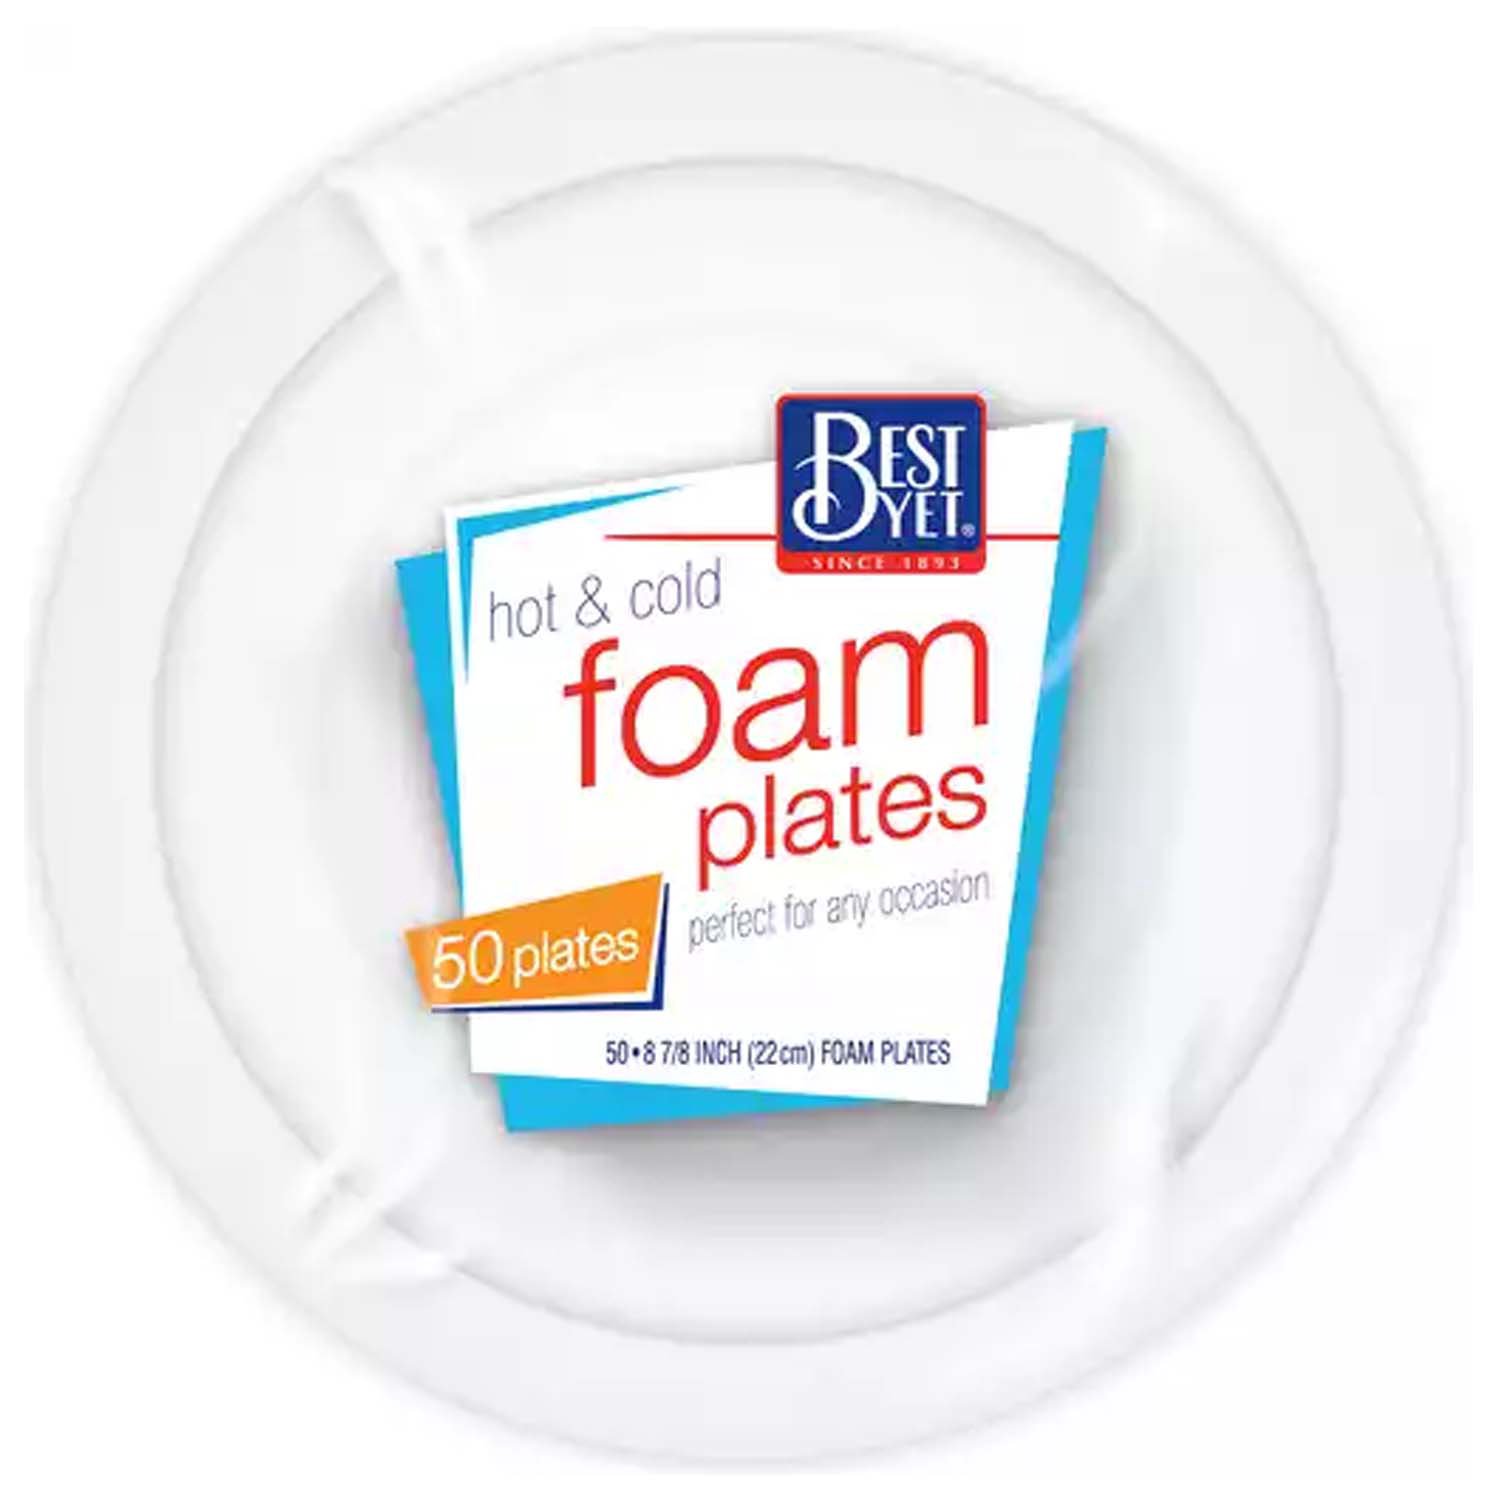 Best Yet Foam Plates